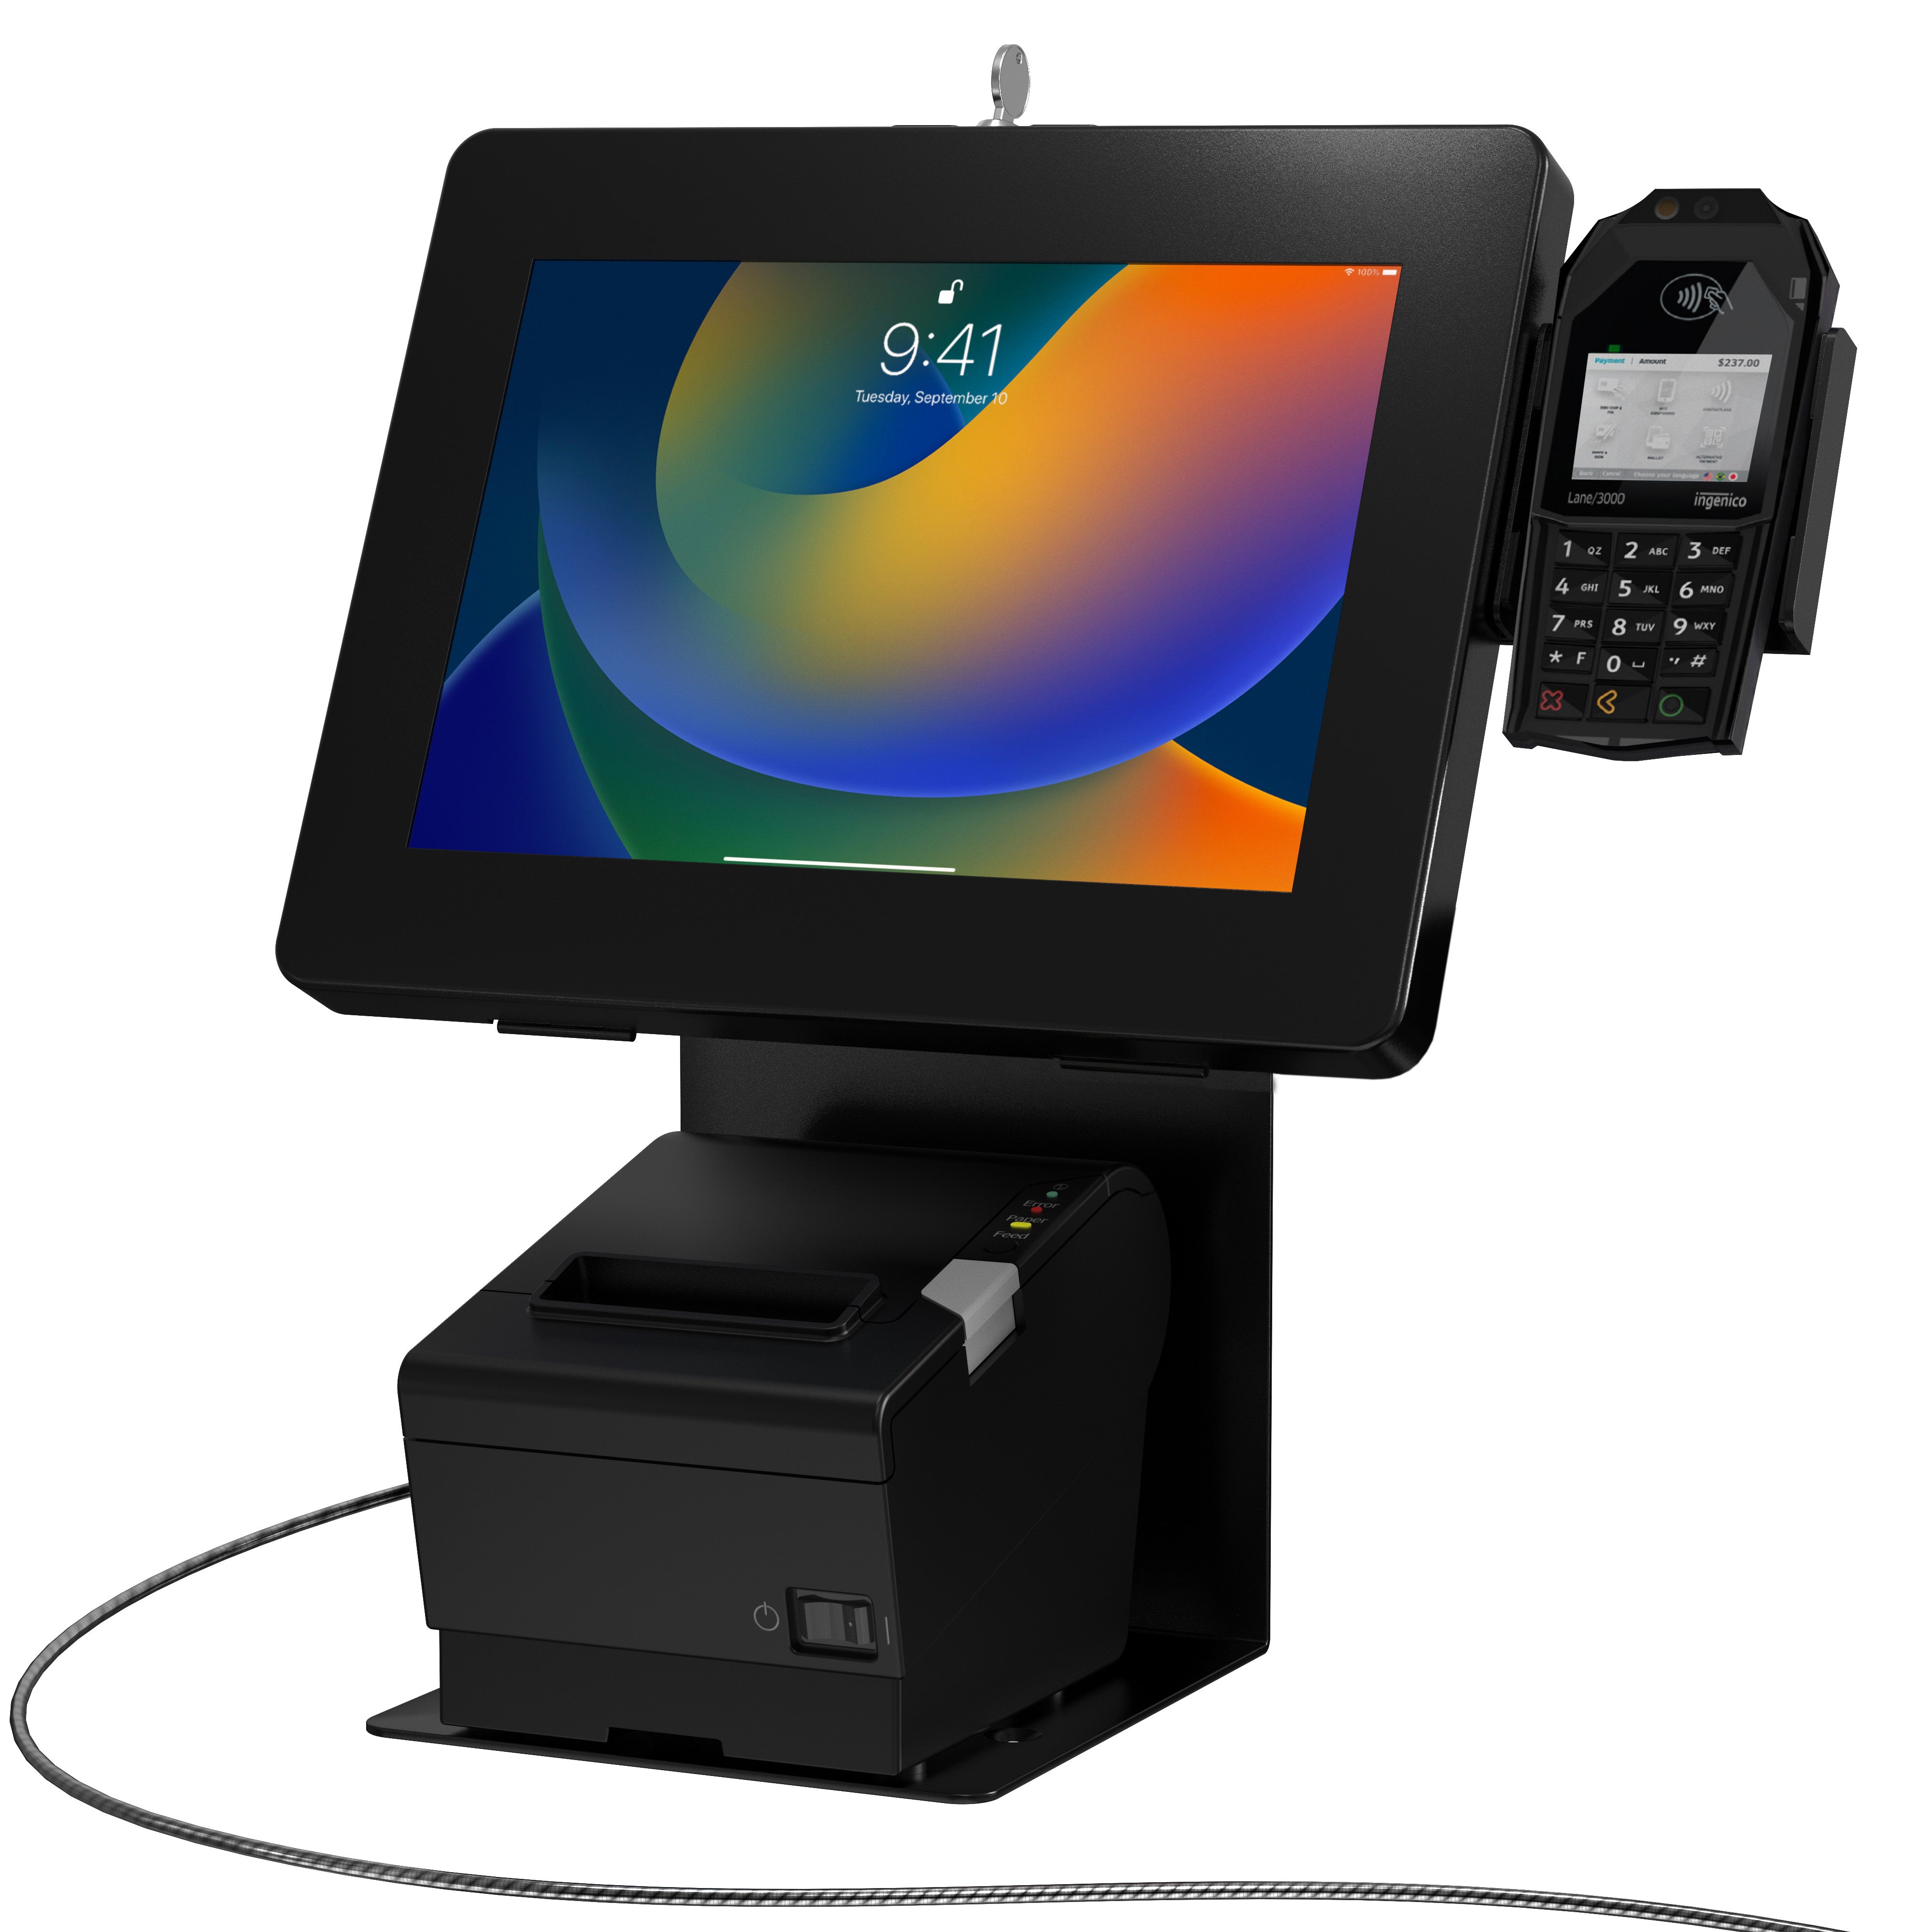 Single VESA Plate POS Station with Printer Stand, Magnetic Scanner & Card Reader Holder